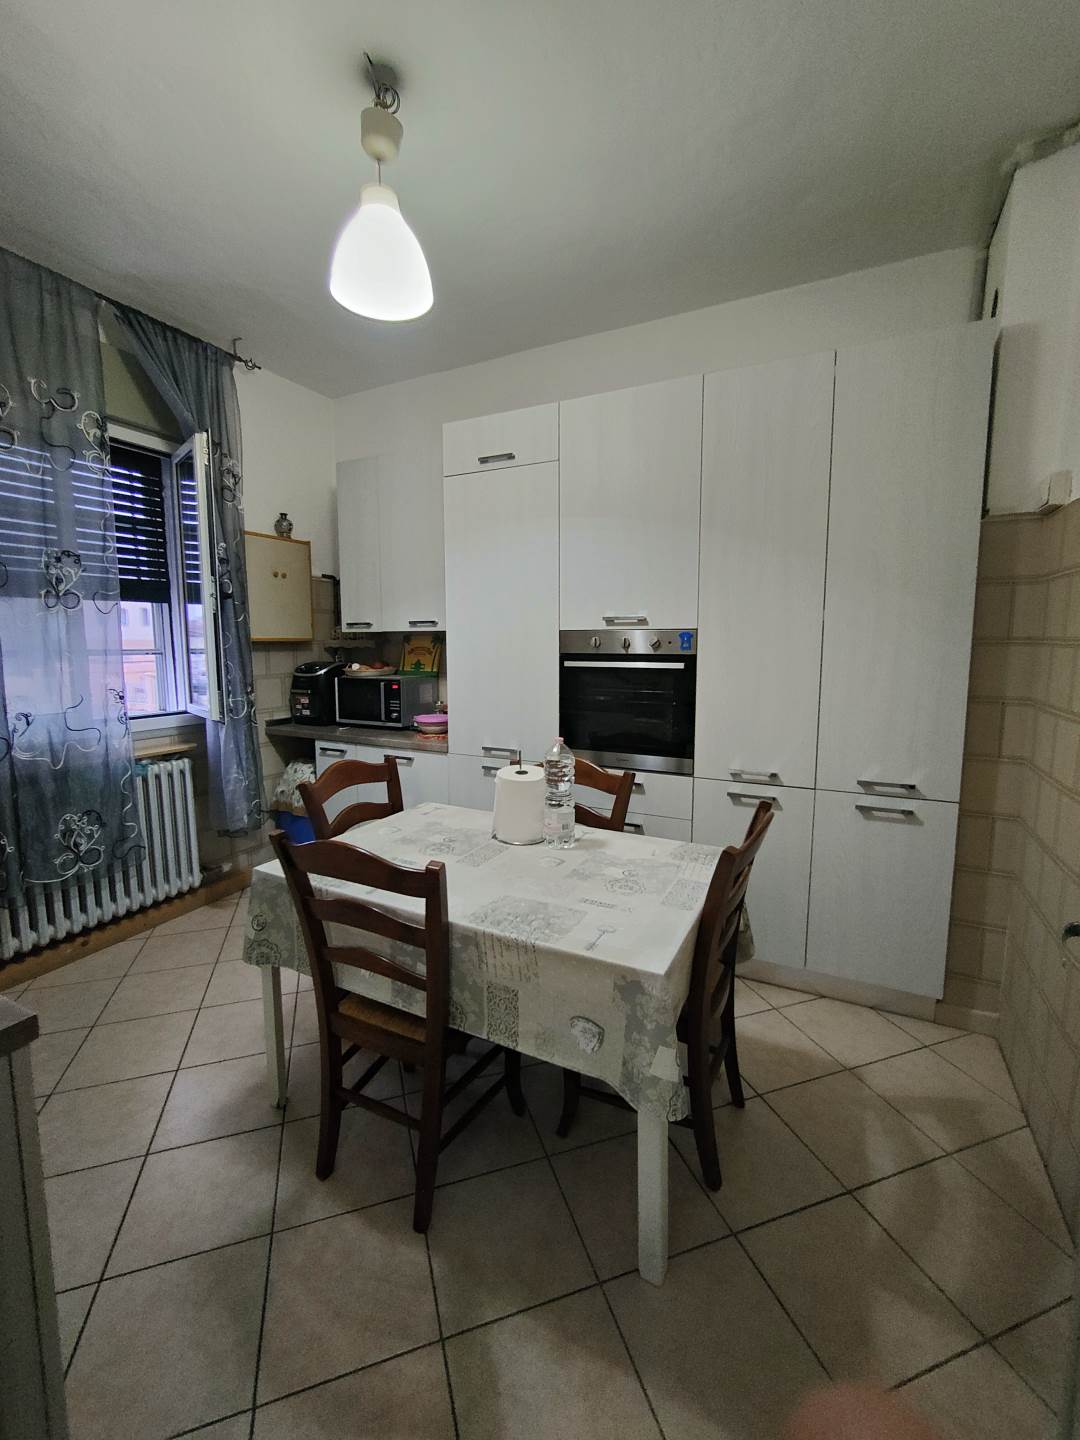 Appartamento in vendita a Reggiolo, 6 locali, prezzo € 110.000 | PortaleAgenzieImmobiliari.it